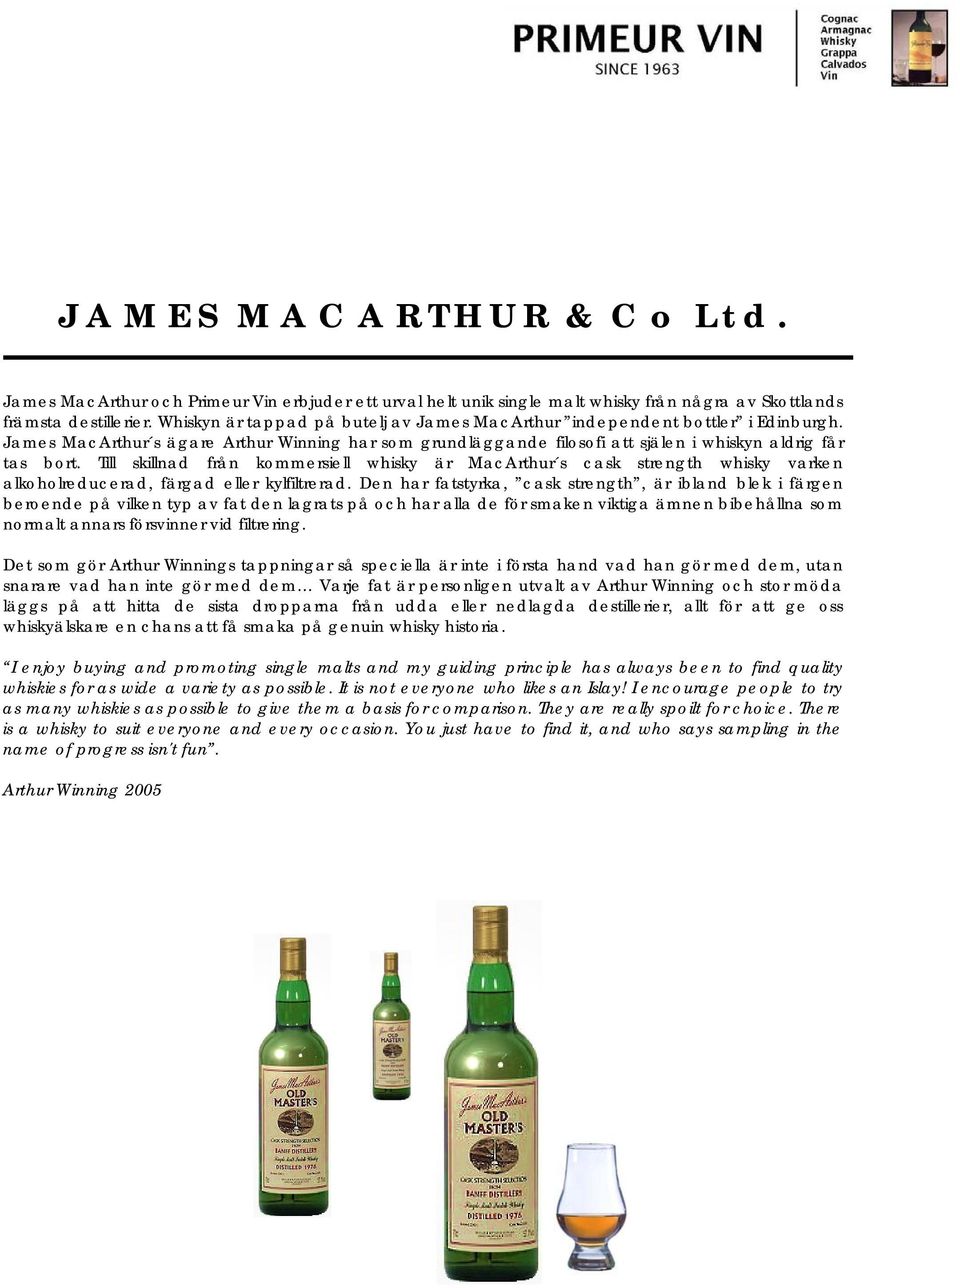 Till skillnad från kommersiell whisky är MacArthur s cask strength whisky varken alkoholreducerad, färgad eller kylfiltrerad.